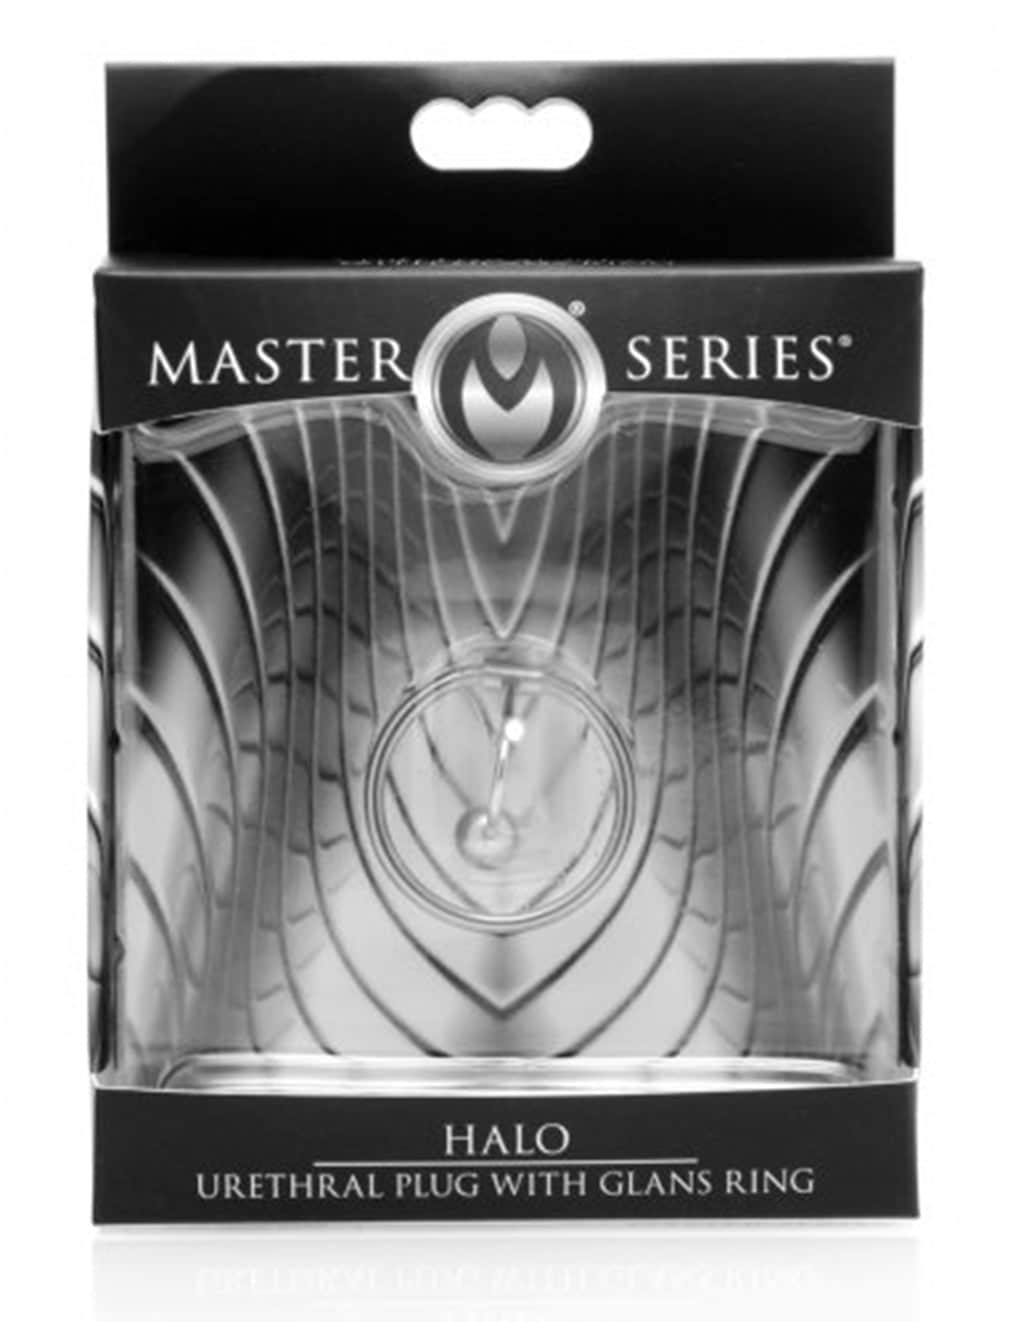 Master Series Halo Urethral Plug With Glans Ring. Slide 3